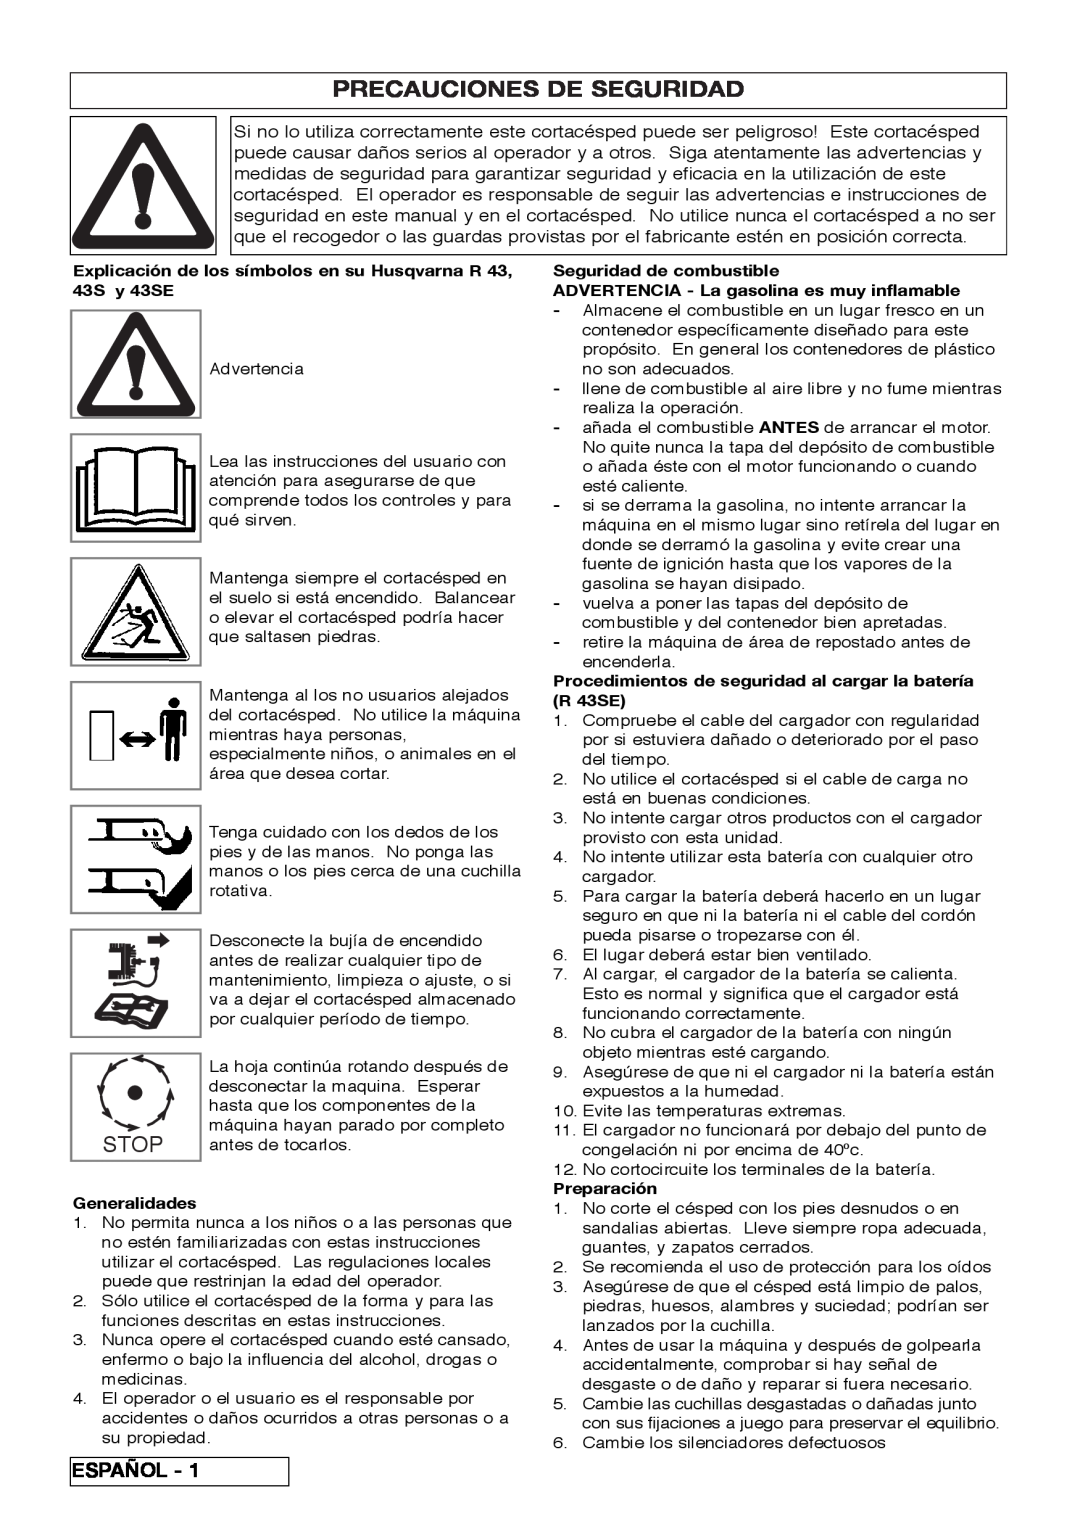 Husqvarna R 43SE manual Precauciones De Seguridad, Stop, Español 